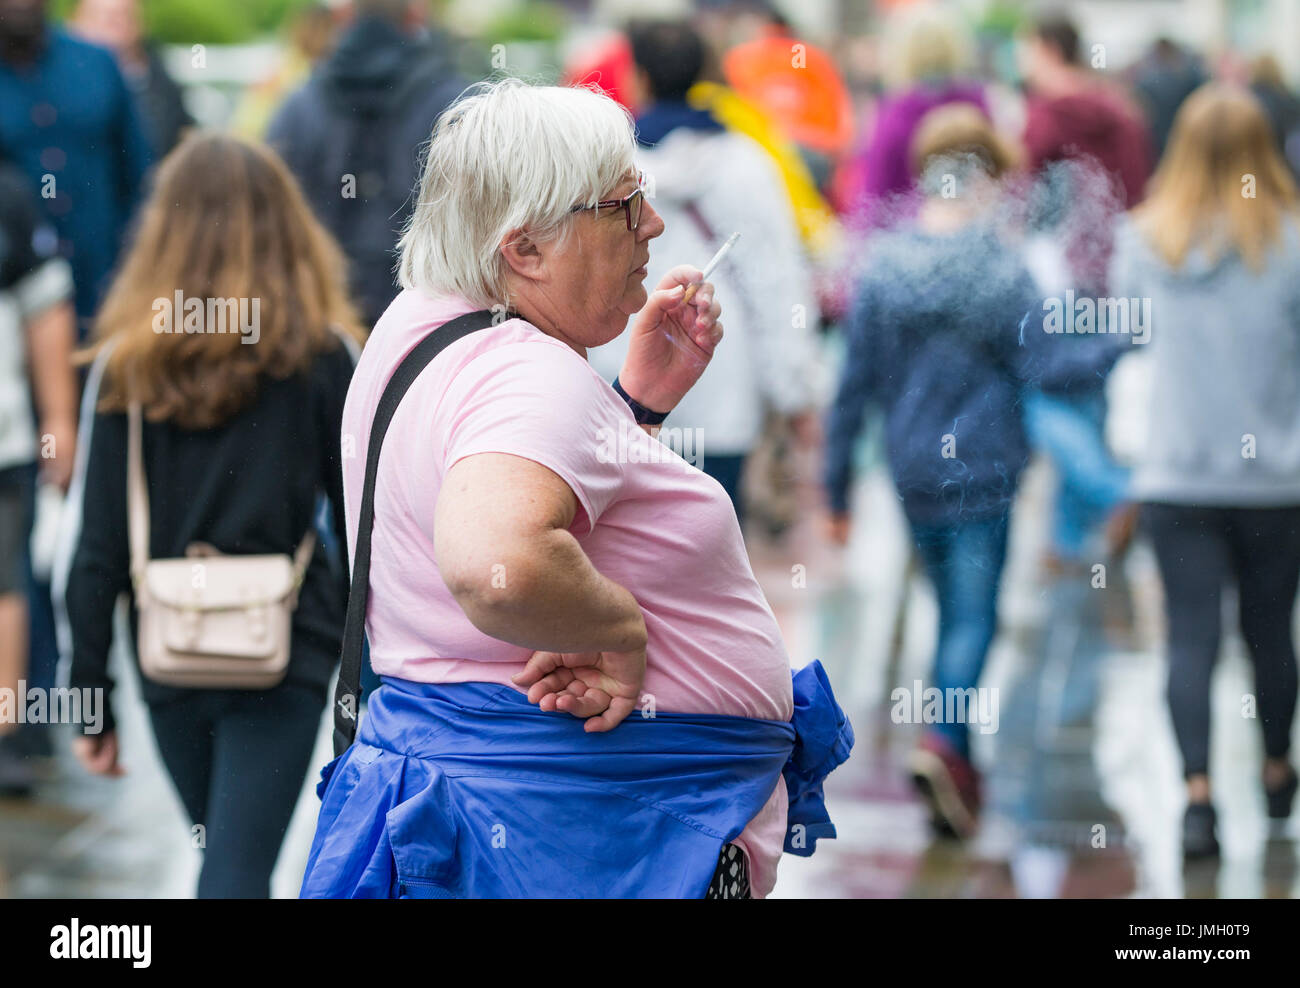 Im mittleren Alter übergewichtige kaukasische Frau Rauchen draußen in einer belebten überfüllten Stadt, in Großbritannien. Ungesunde Lifestyle-Konzept. Stockfoto